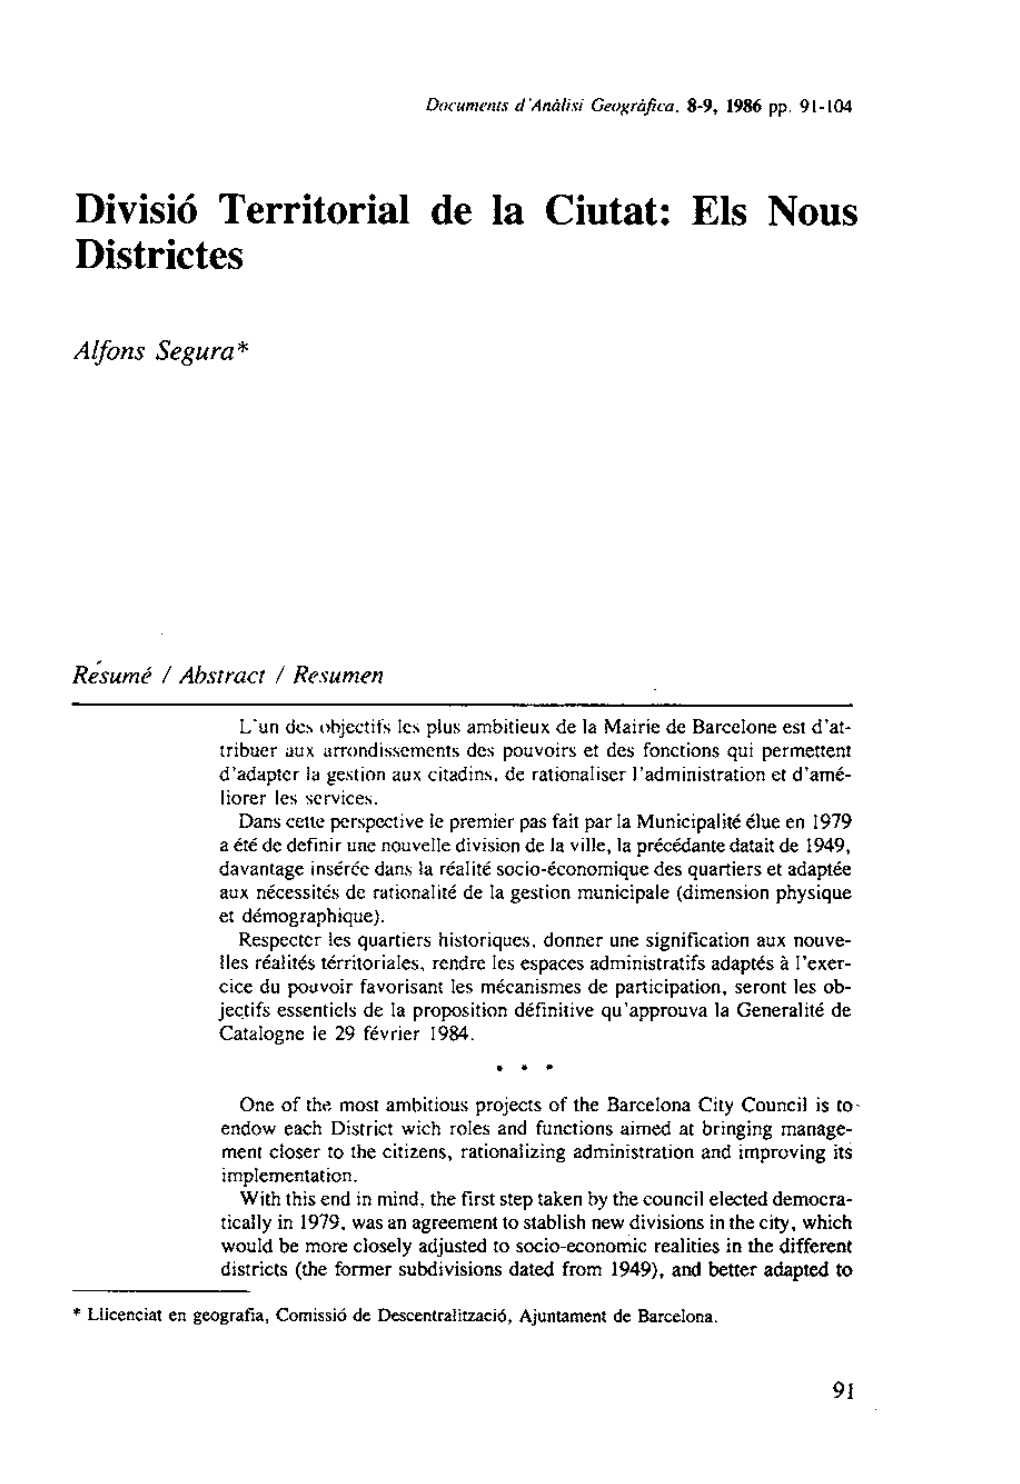 Divisió Territorial De La Ciutat: Els Nous Districtes